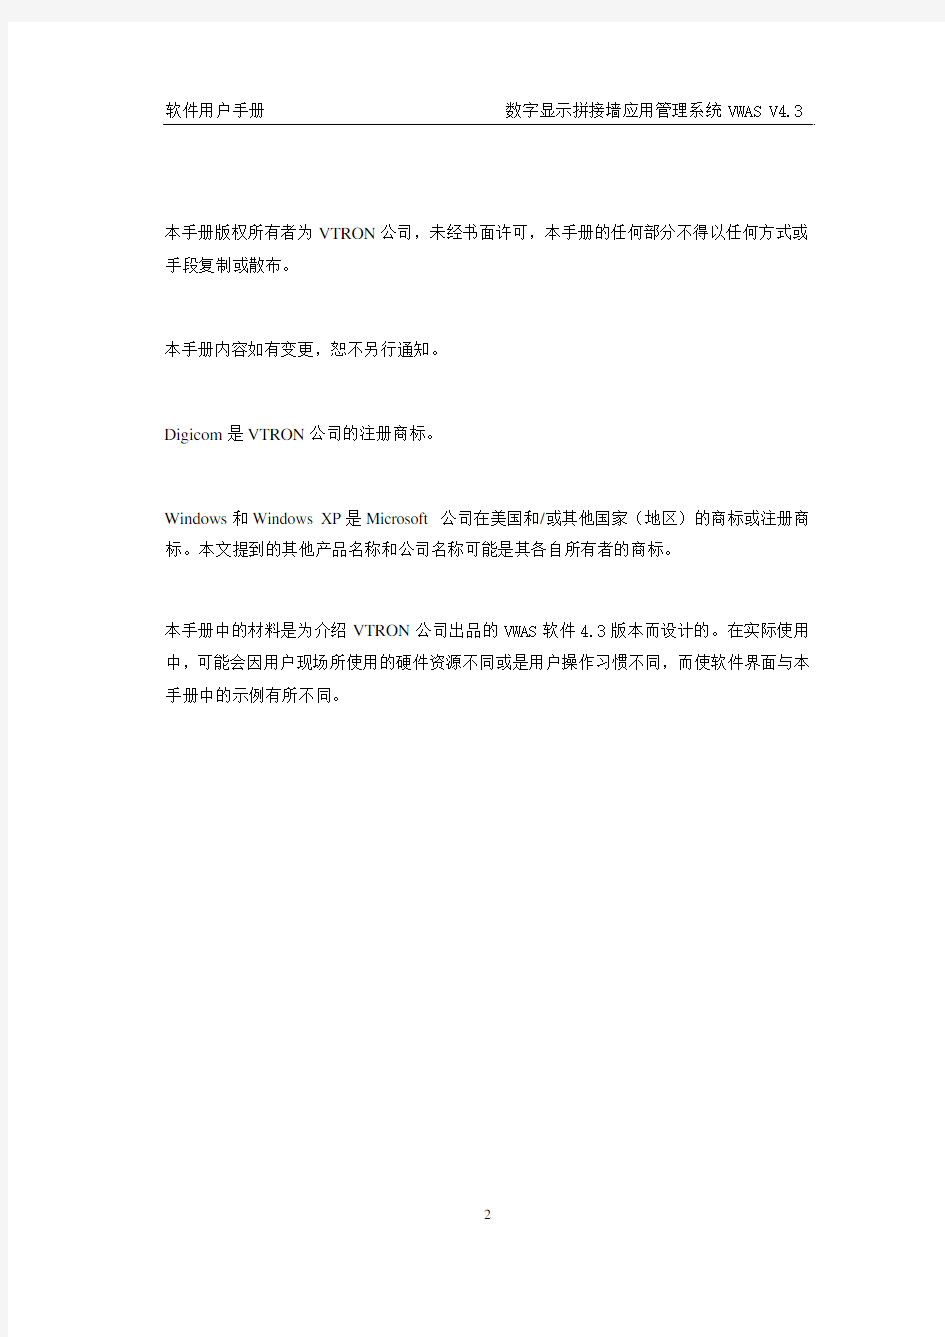 显示墙应用管理系统VWAS4.3用户手册-_简体中文版_V1.0